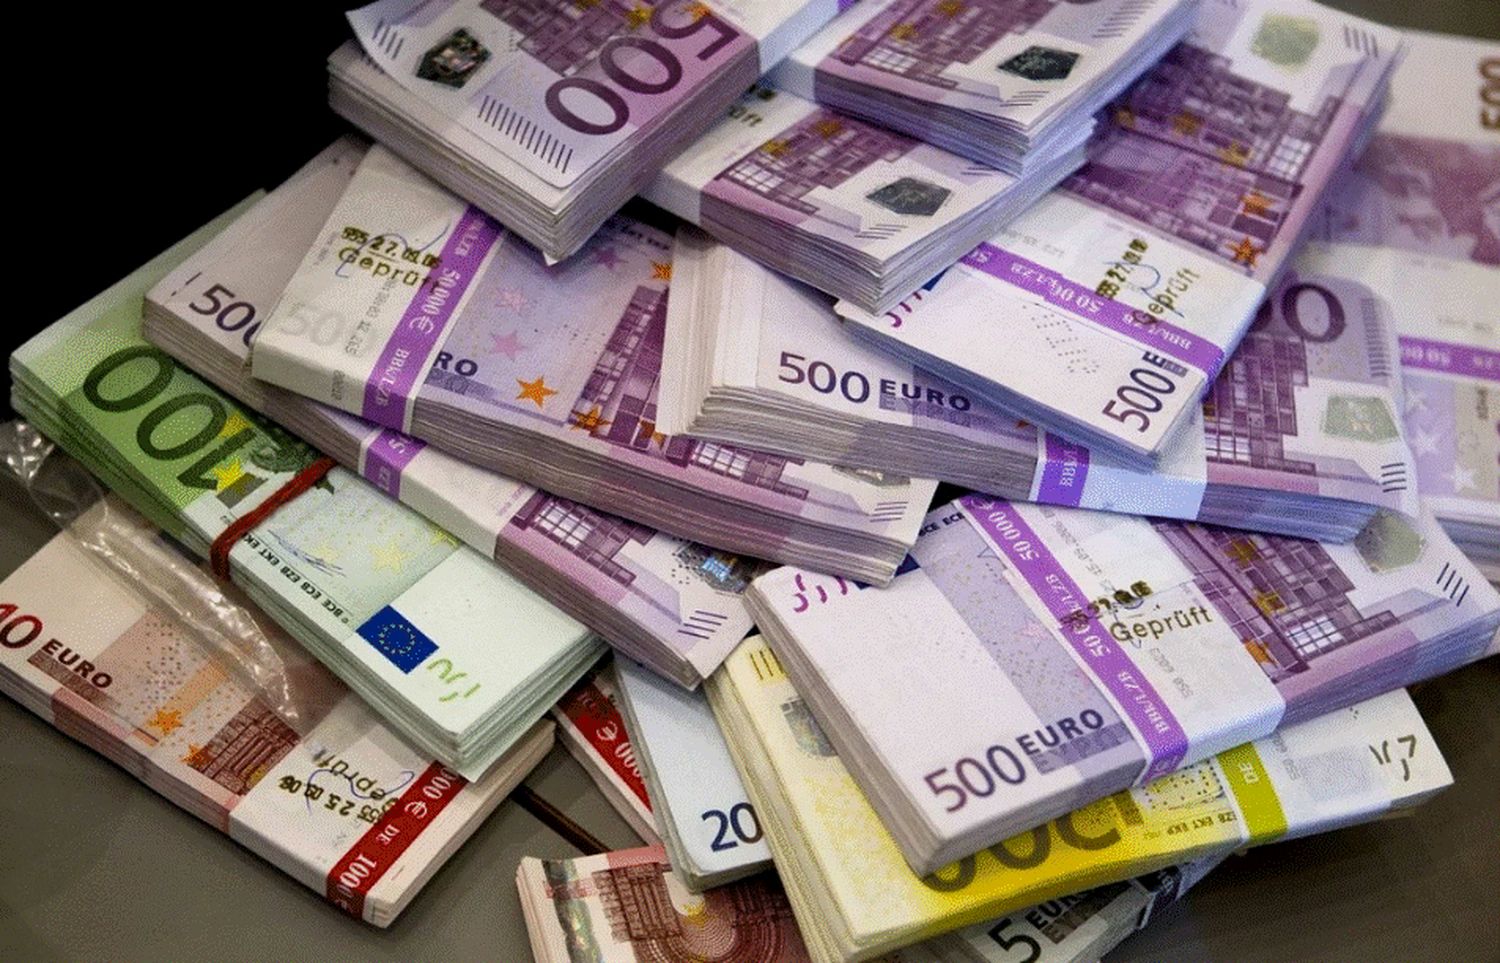 Super ofertă! Un om de afaceri din Bihor oferă 100.000 de euro pentru o informație